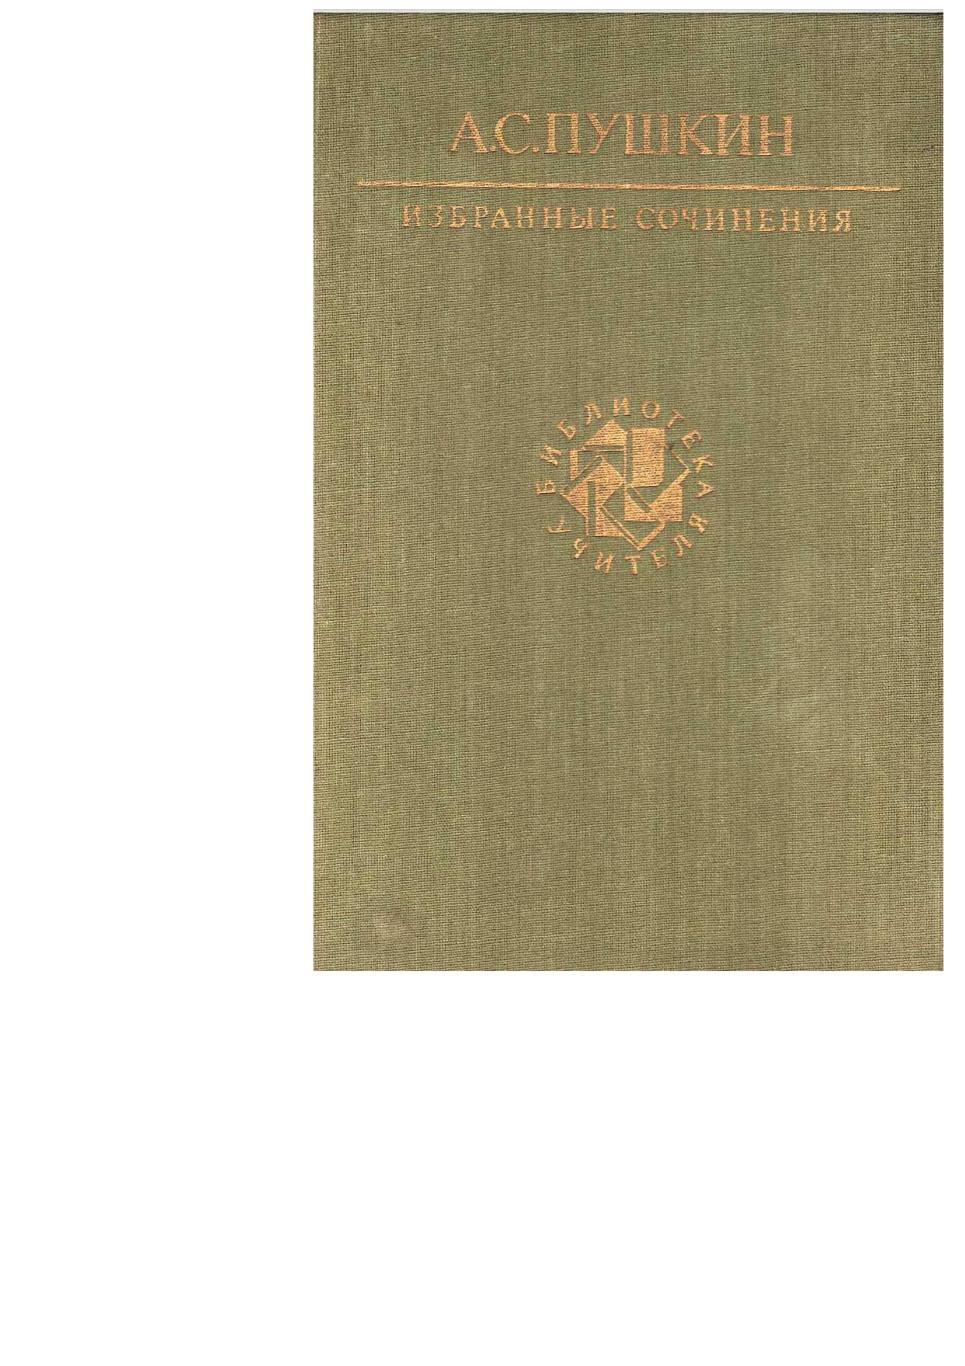 Пушкин А.С. Избранные сочинения. – М., 1990. Библиотека учителя.